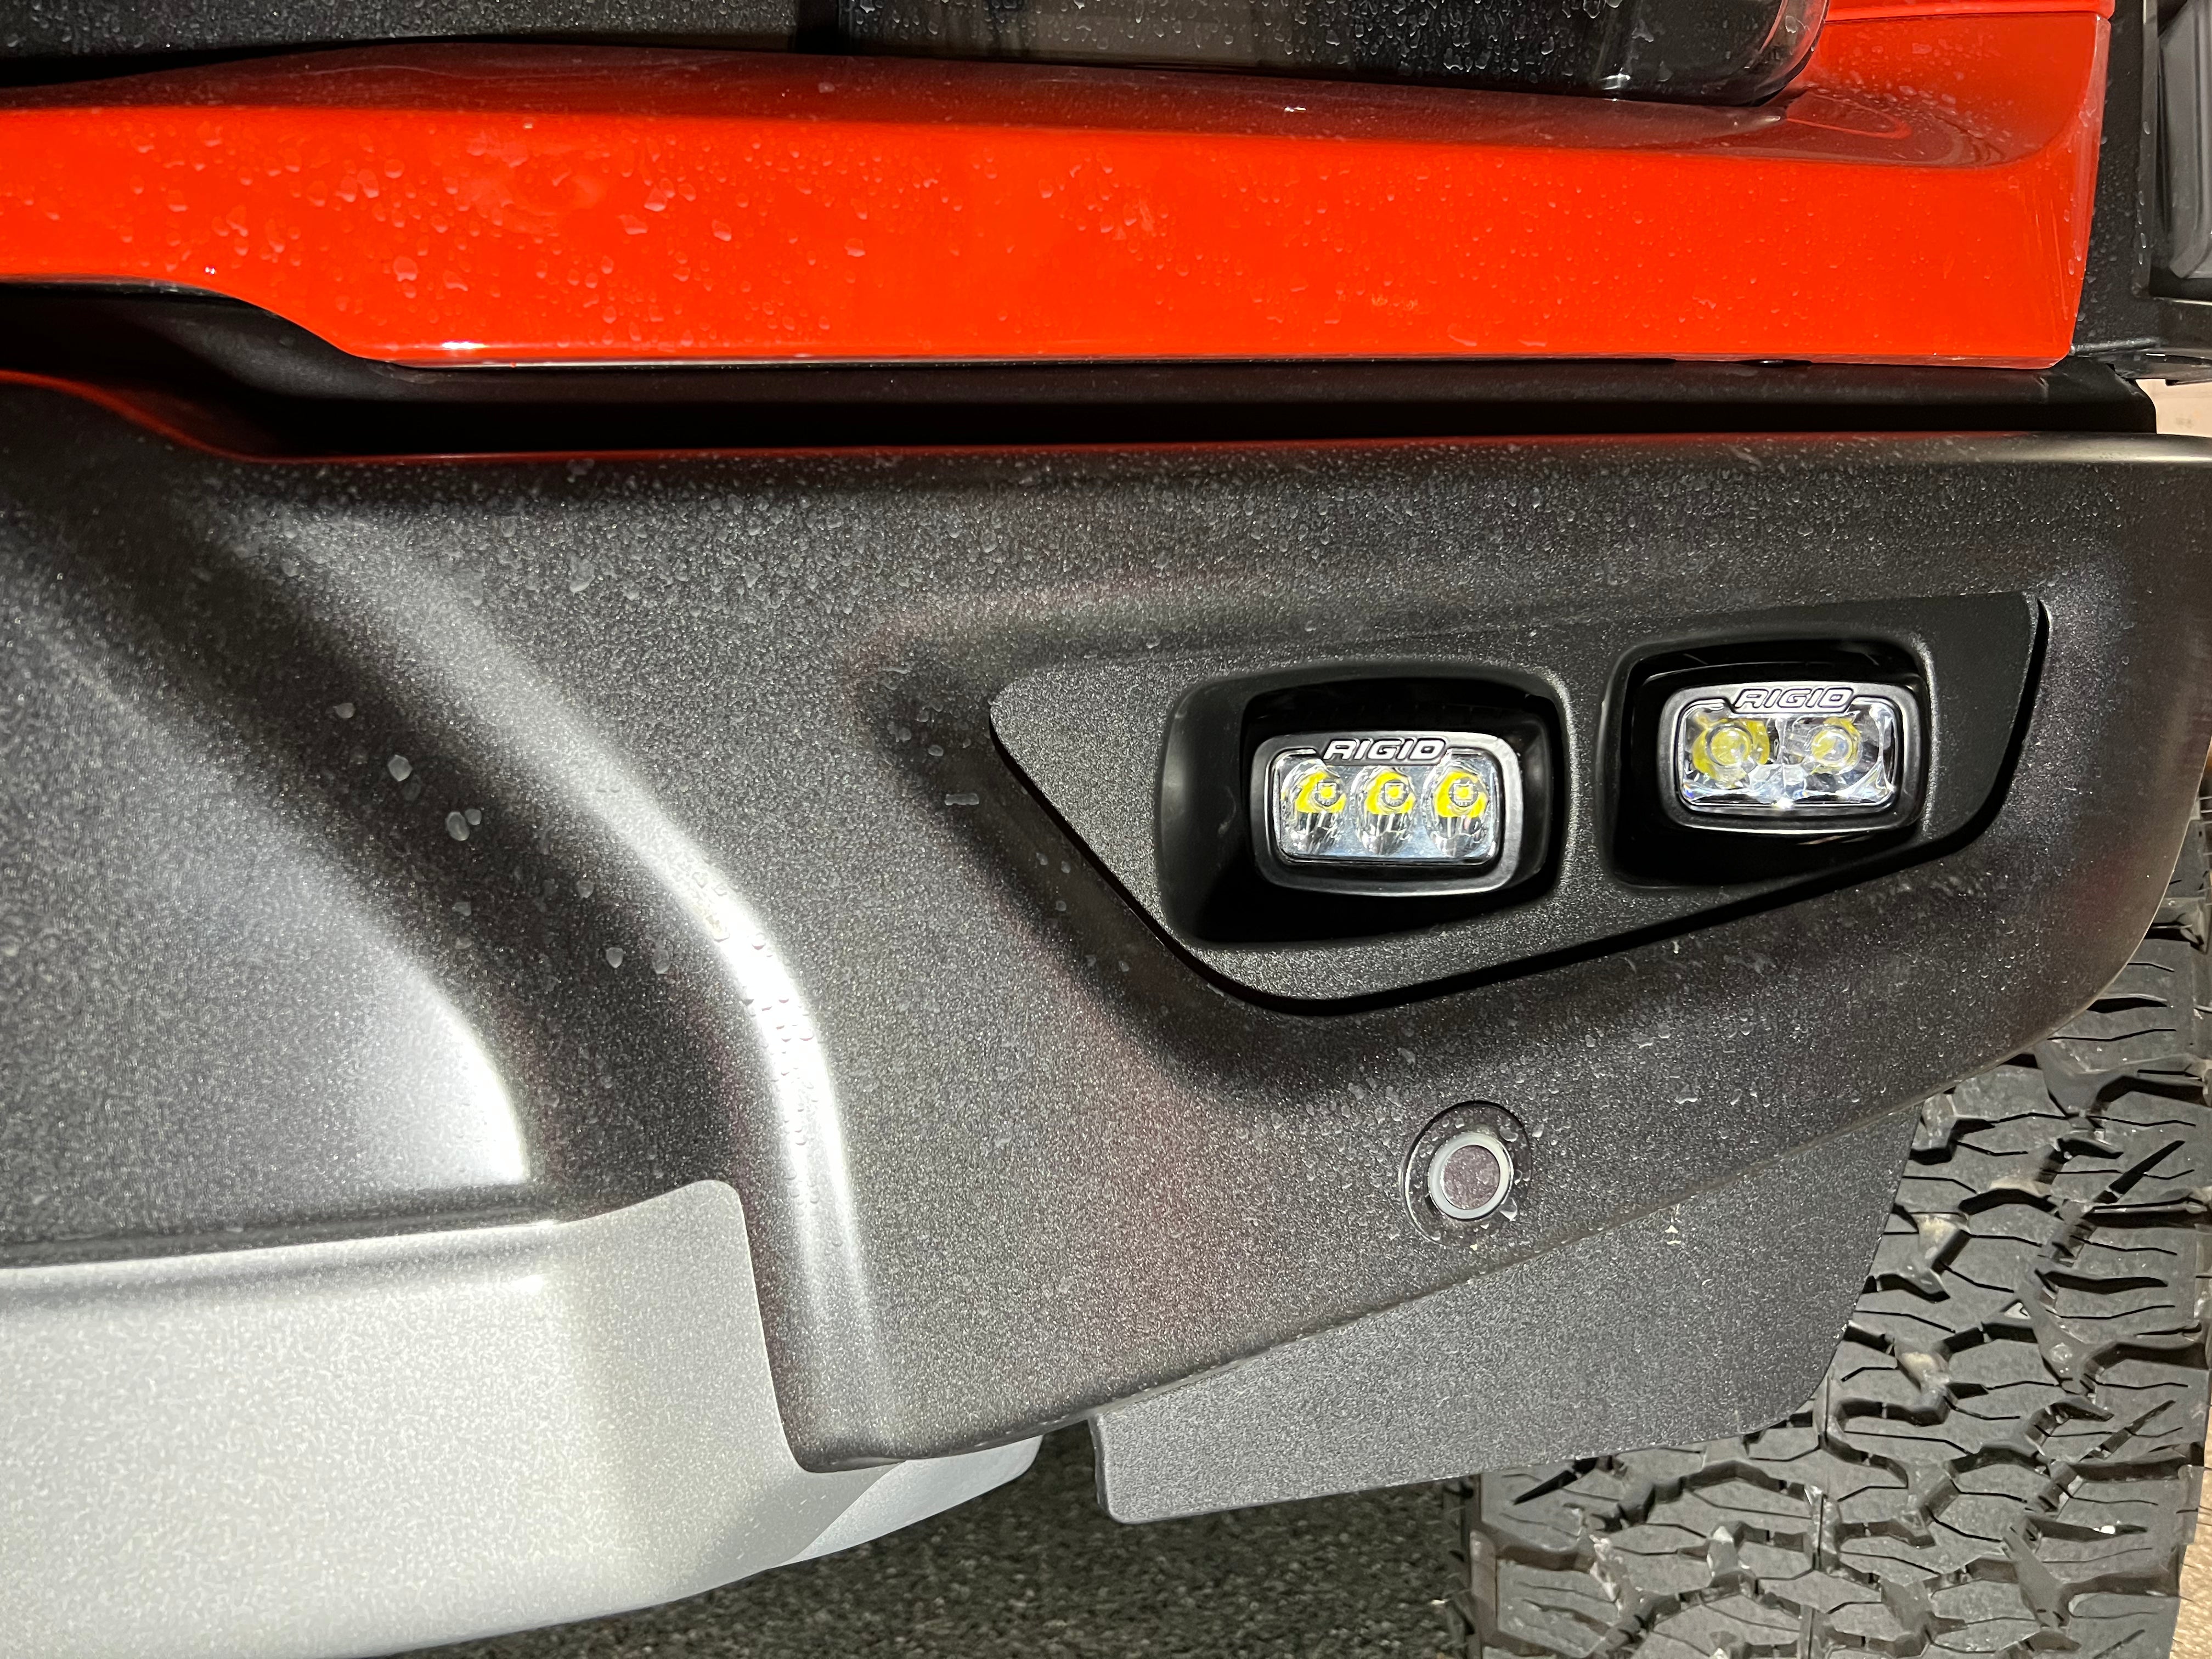 SPV Parts 2021-2024 Ford F-150 Raptor & Bronco Raptor OEM Fog Light Upgrade Kit with Brackets & Rigid SR-M Direct Replacement Lights